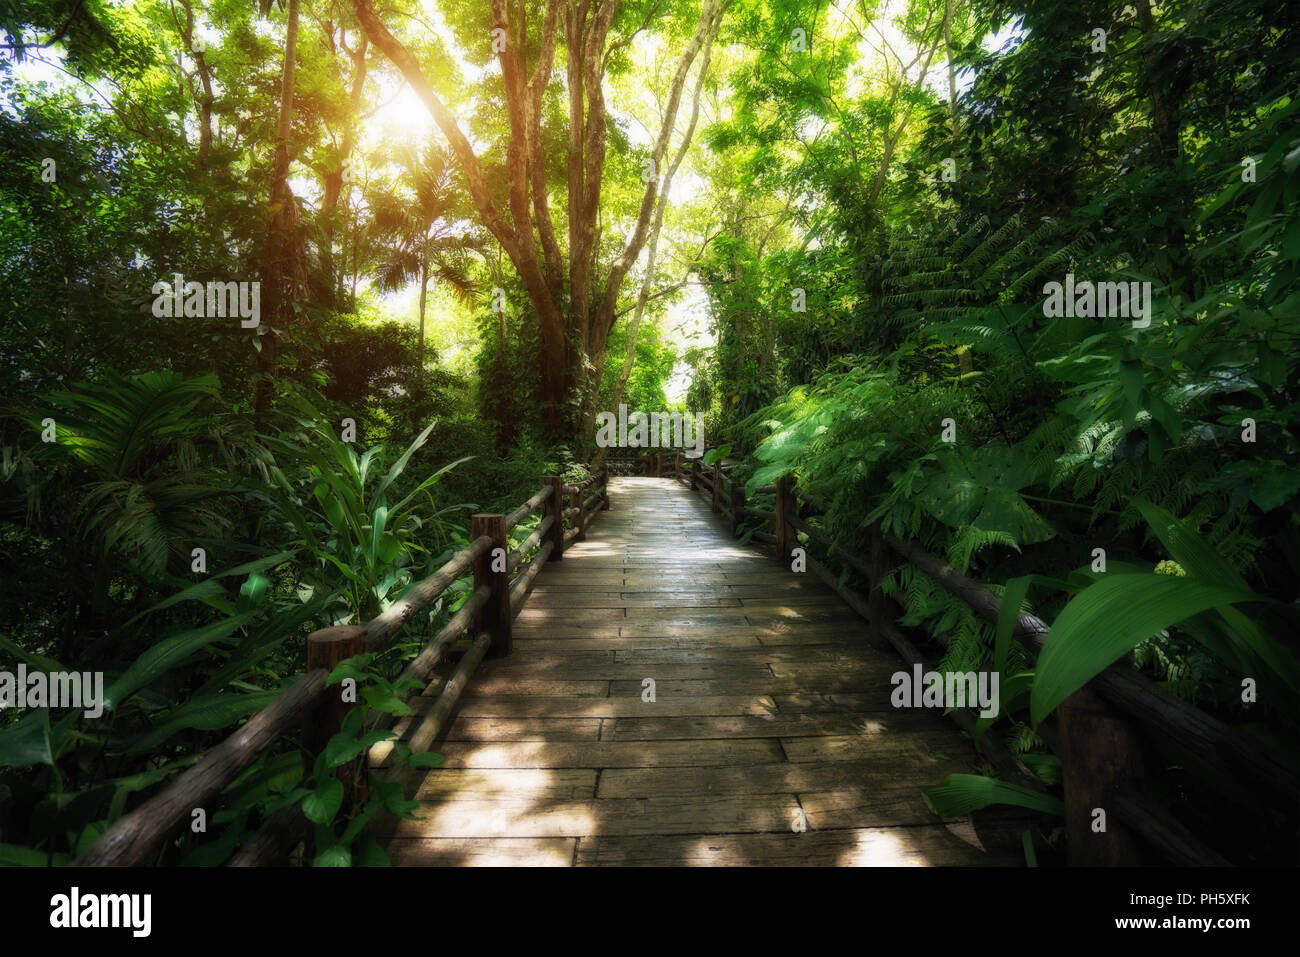 Schönen Regenwald an der Natur Wanderwege in Thailand ist ein sehr beliebt für Fotografen und Touristen. Natürliche und Travel Concept. Stockfoto